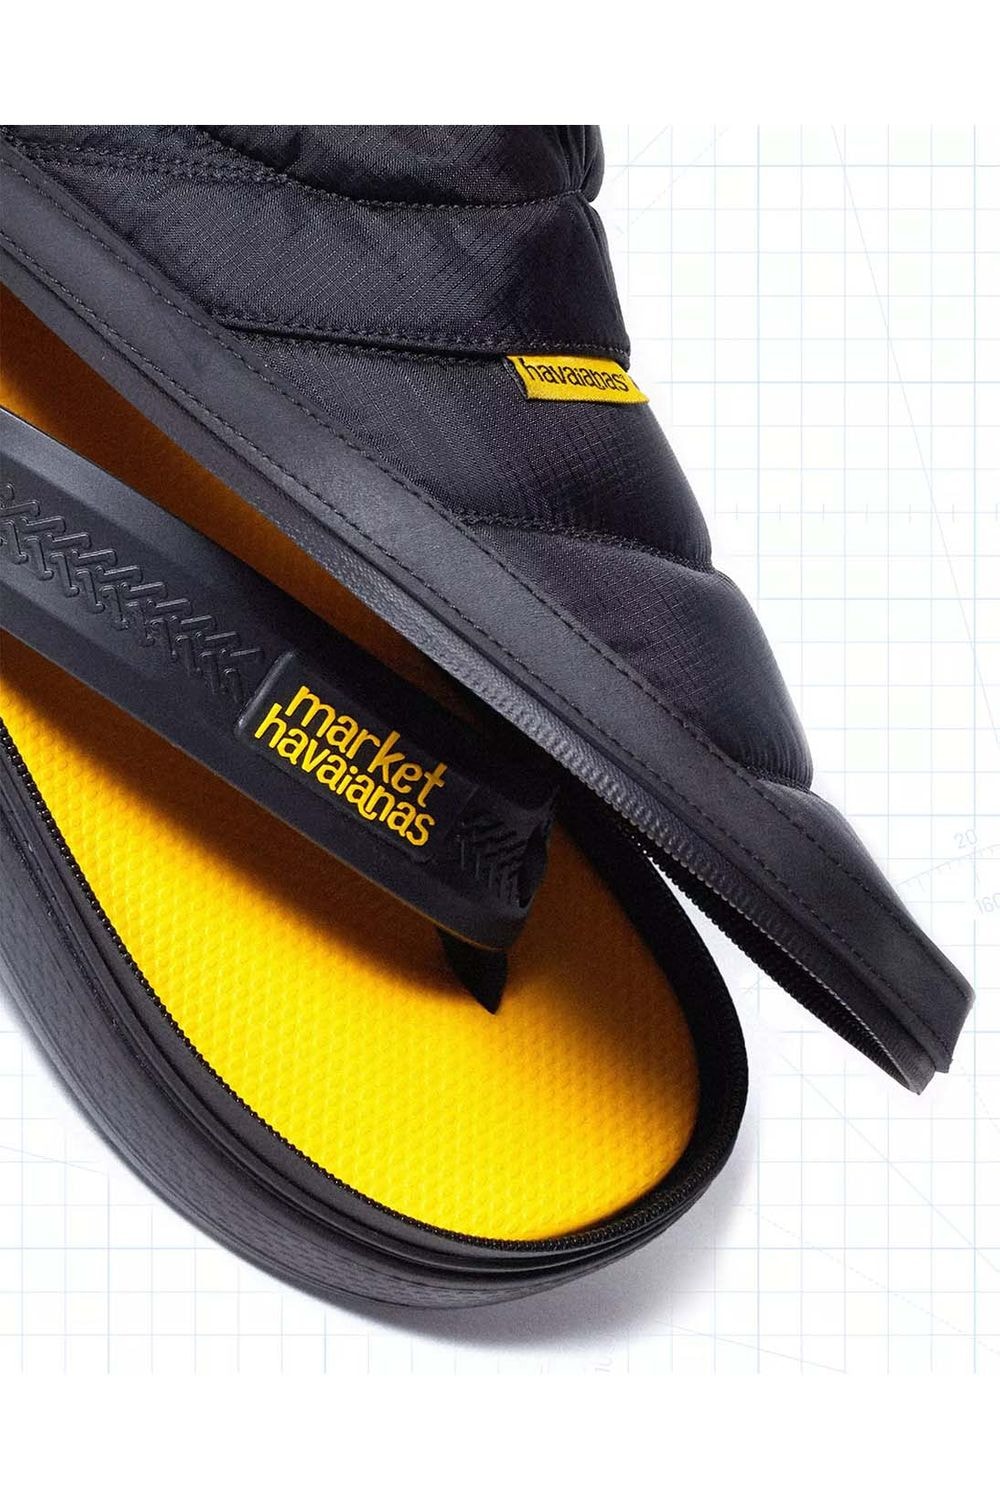 MARKET 攜手 Havaianas 推出拆卸式兩穿鞋履「Zip Top Slides」